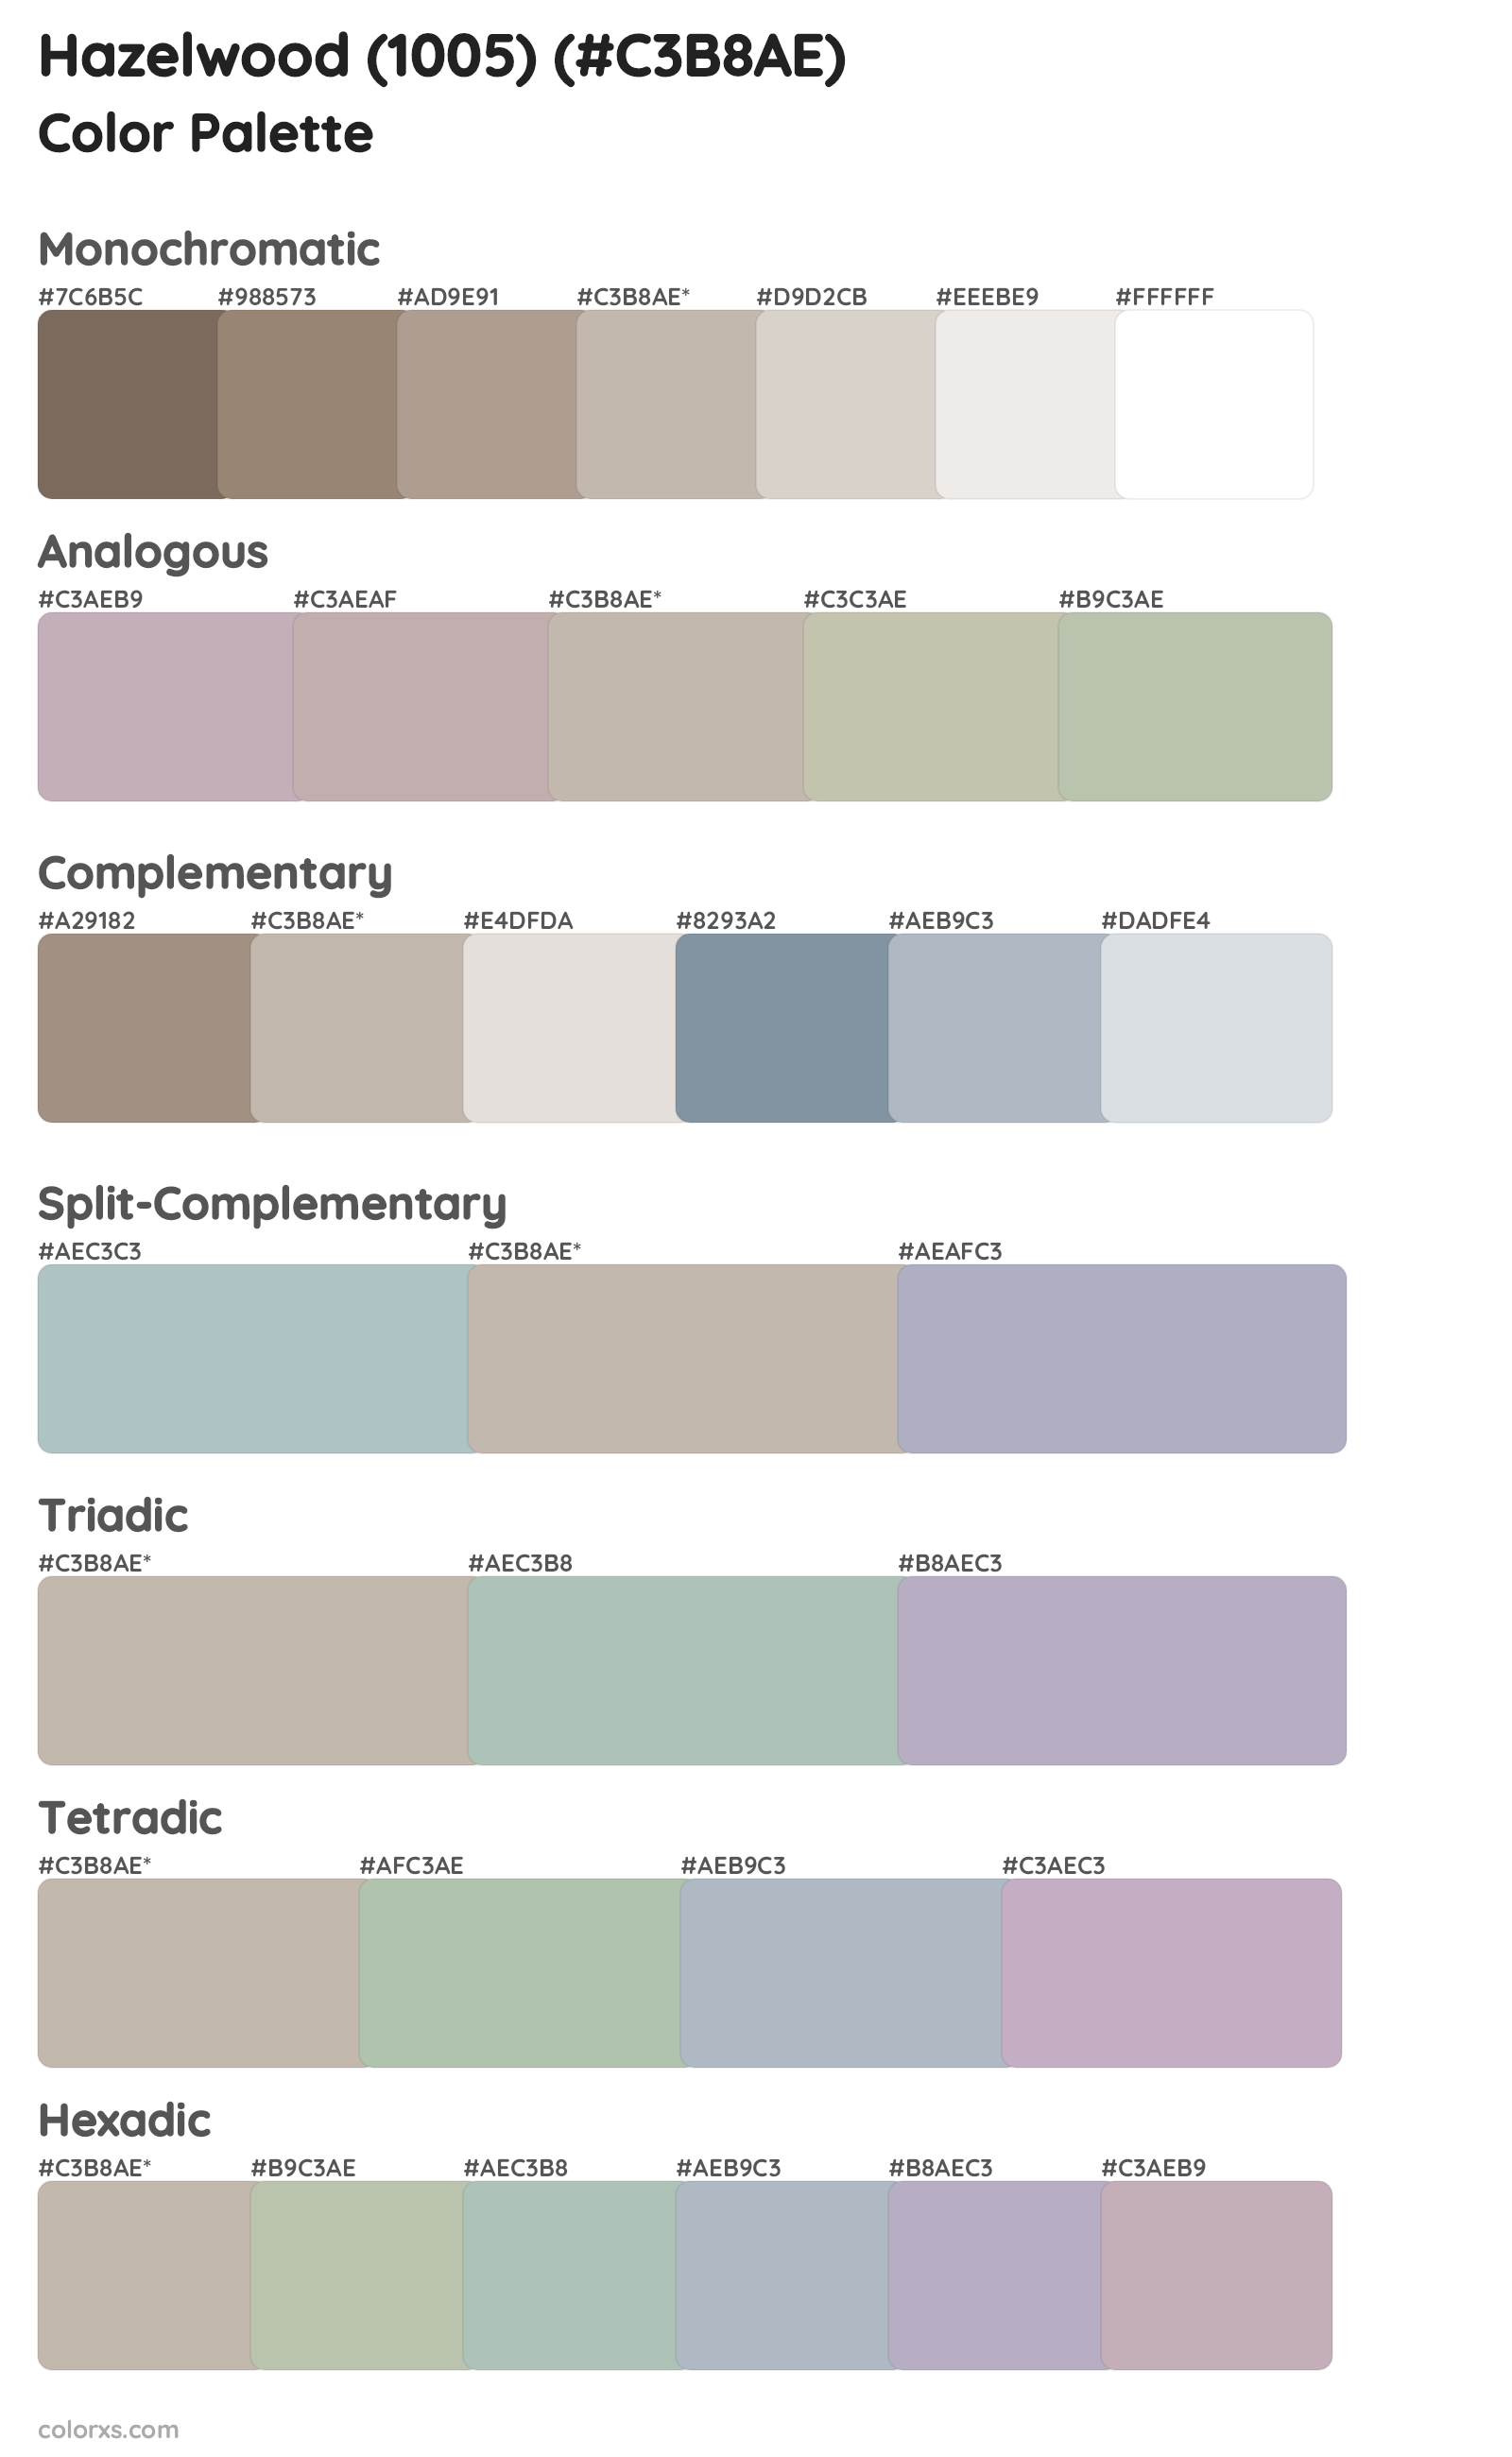 Hazelwood (1005) Color Scheme Palettes